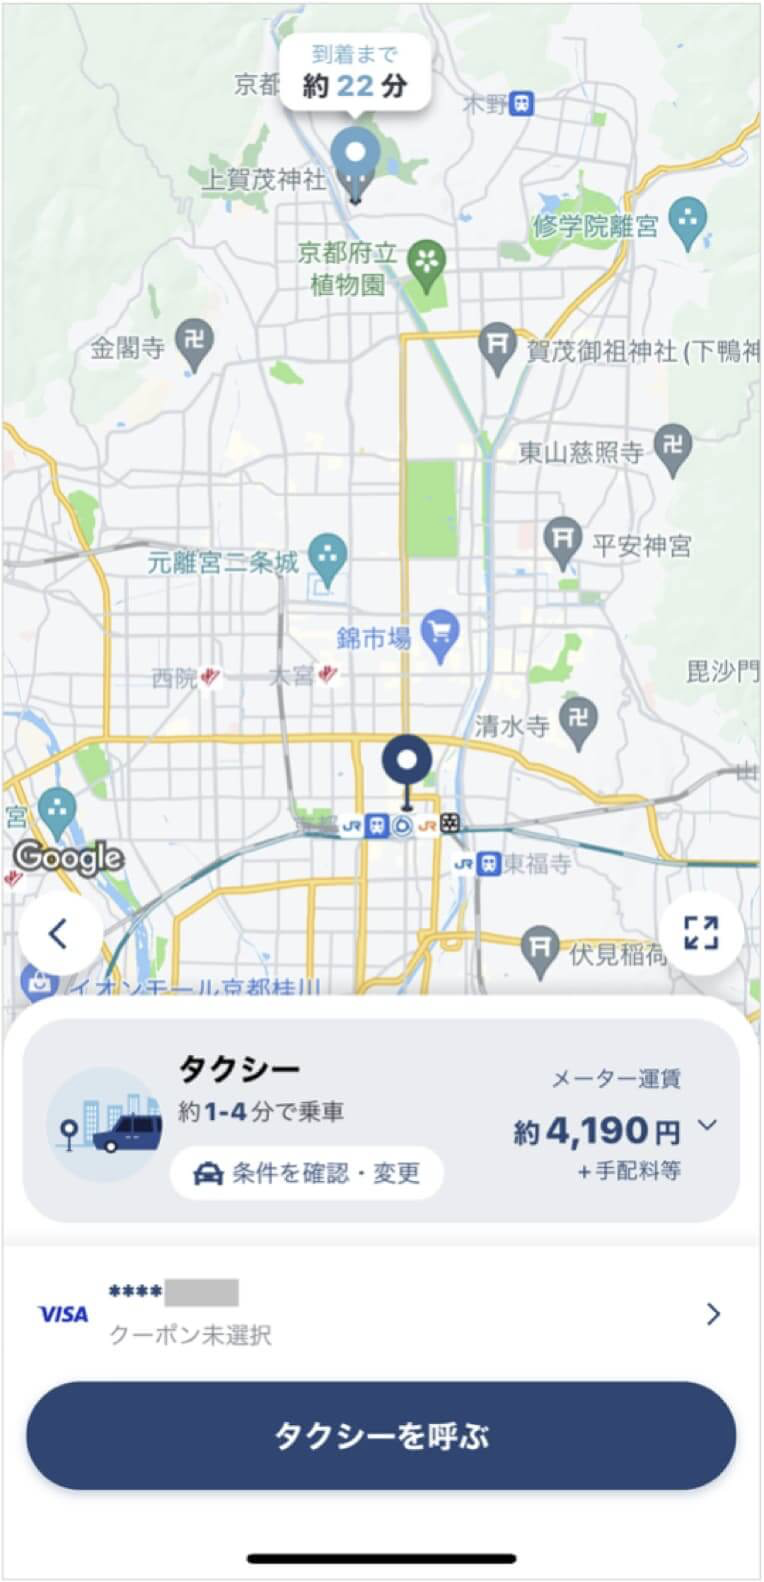 京都駅から上賀茂神社までのタクシー料金・所要時間まとめ